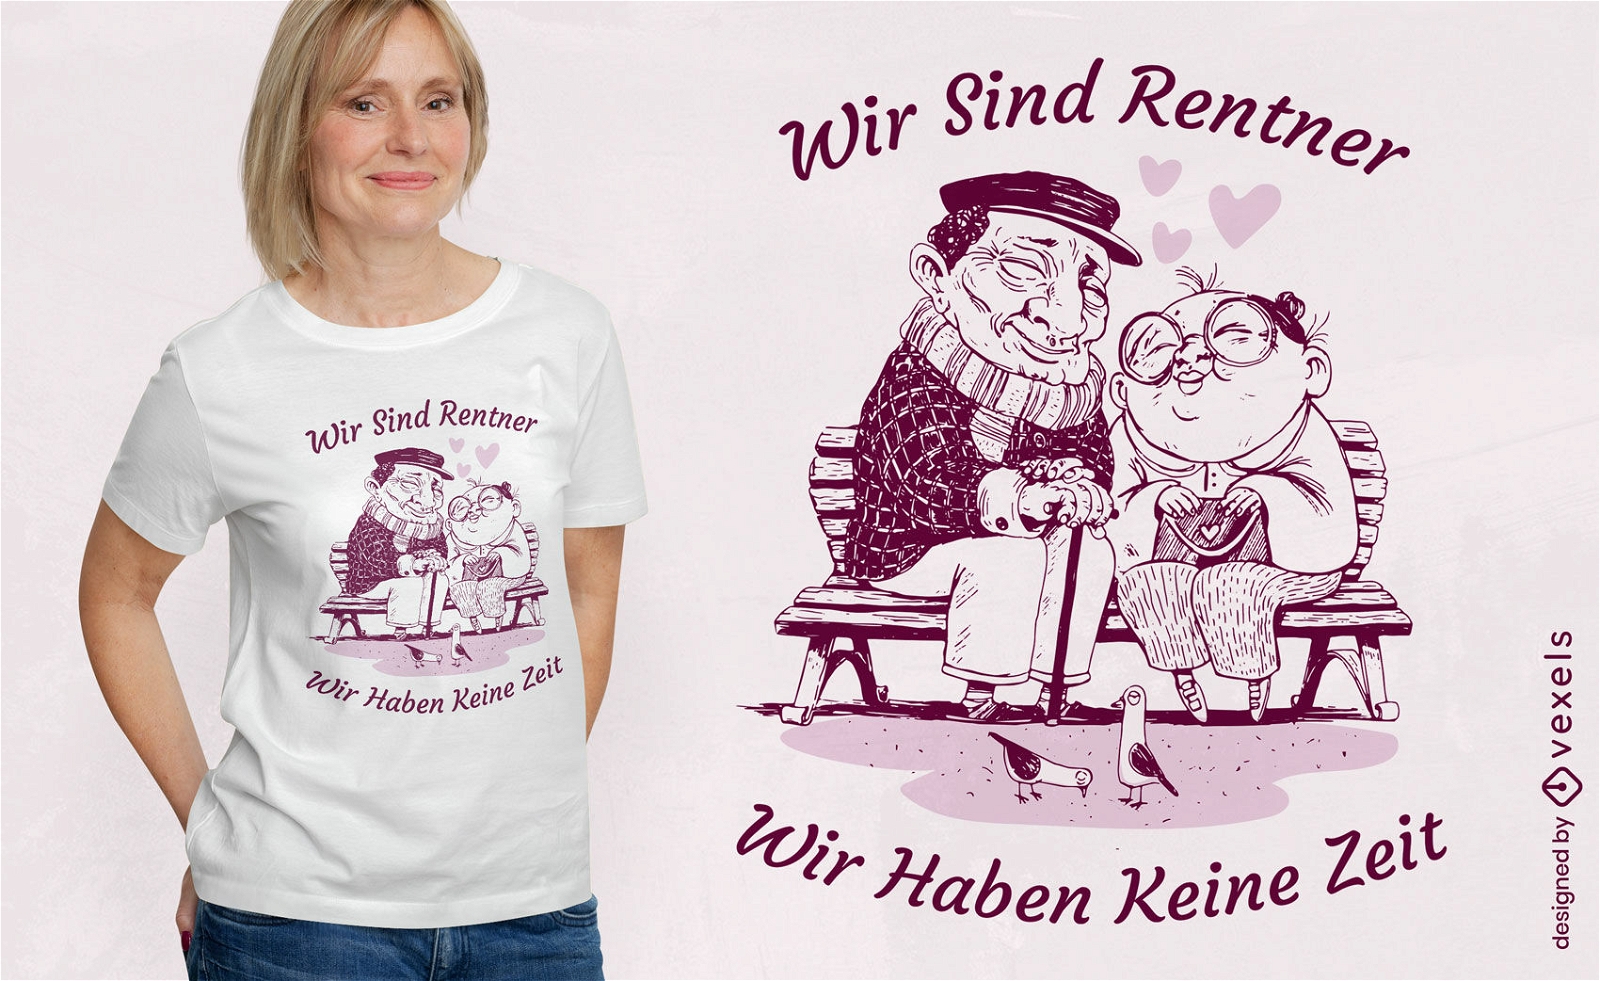 Retired couple love t-shirt design